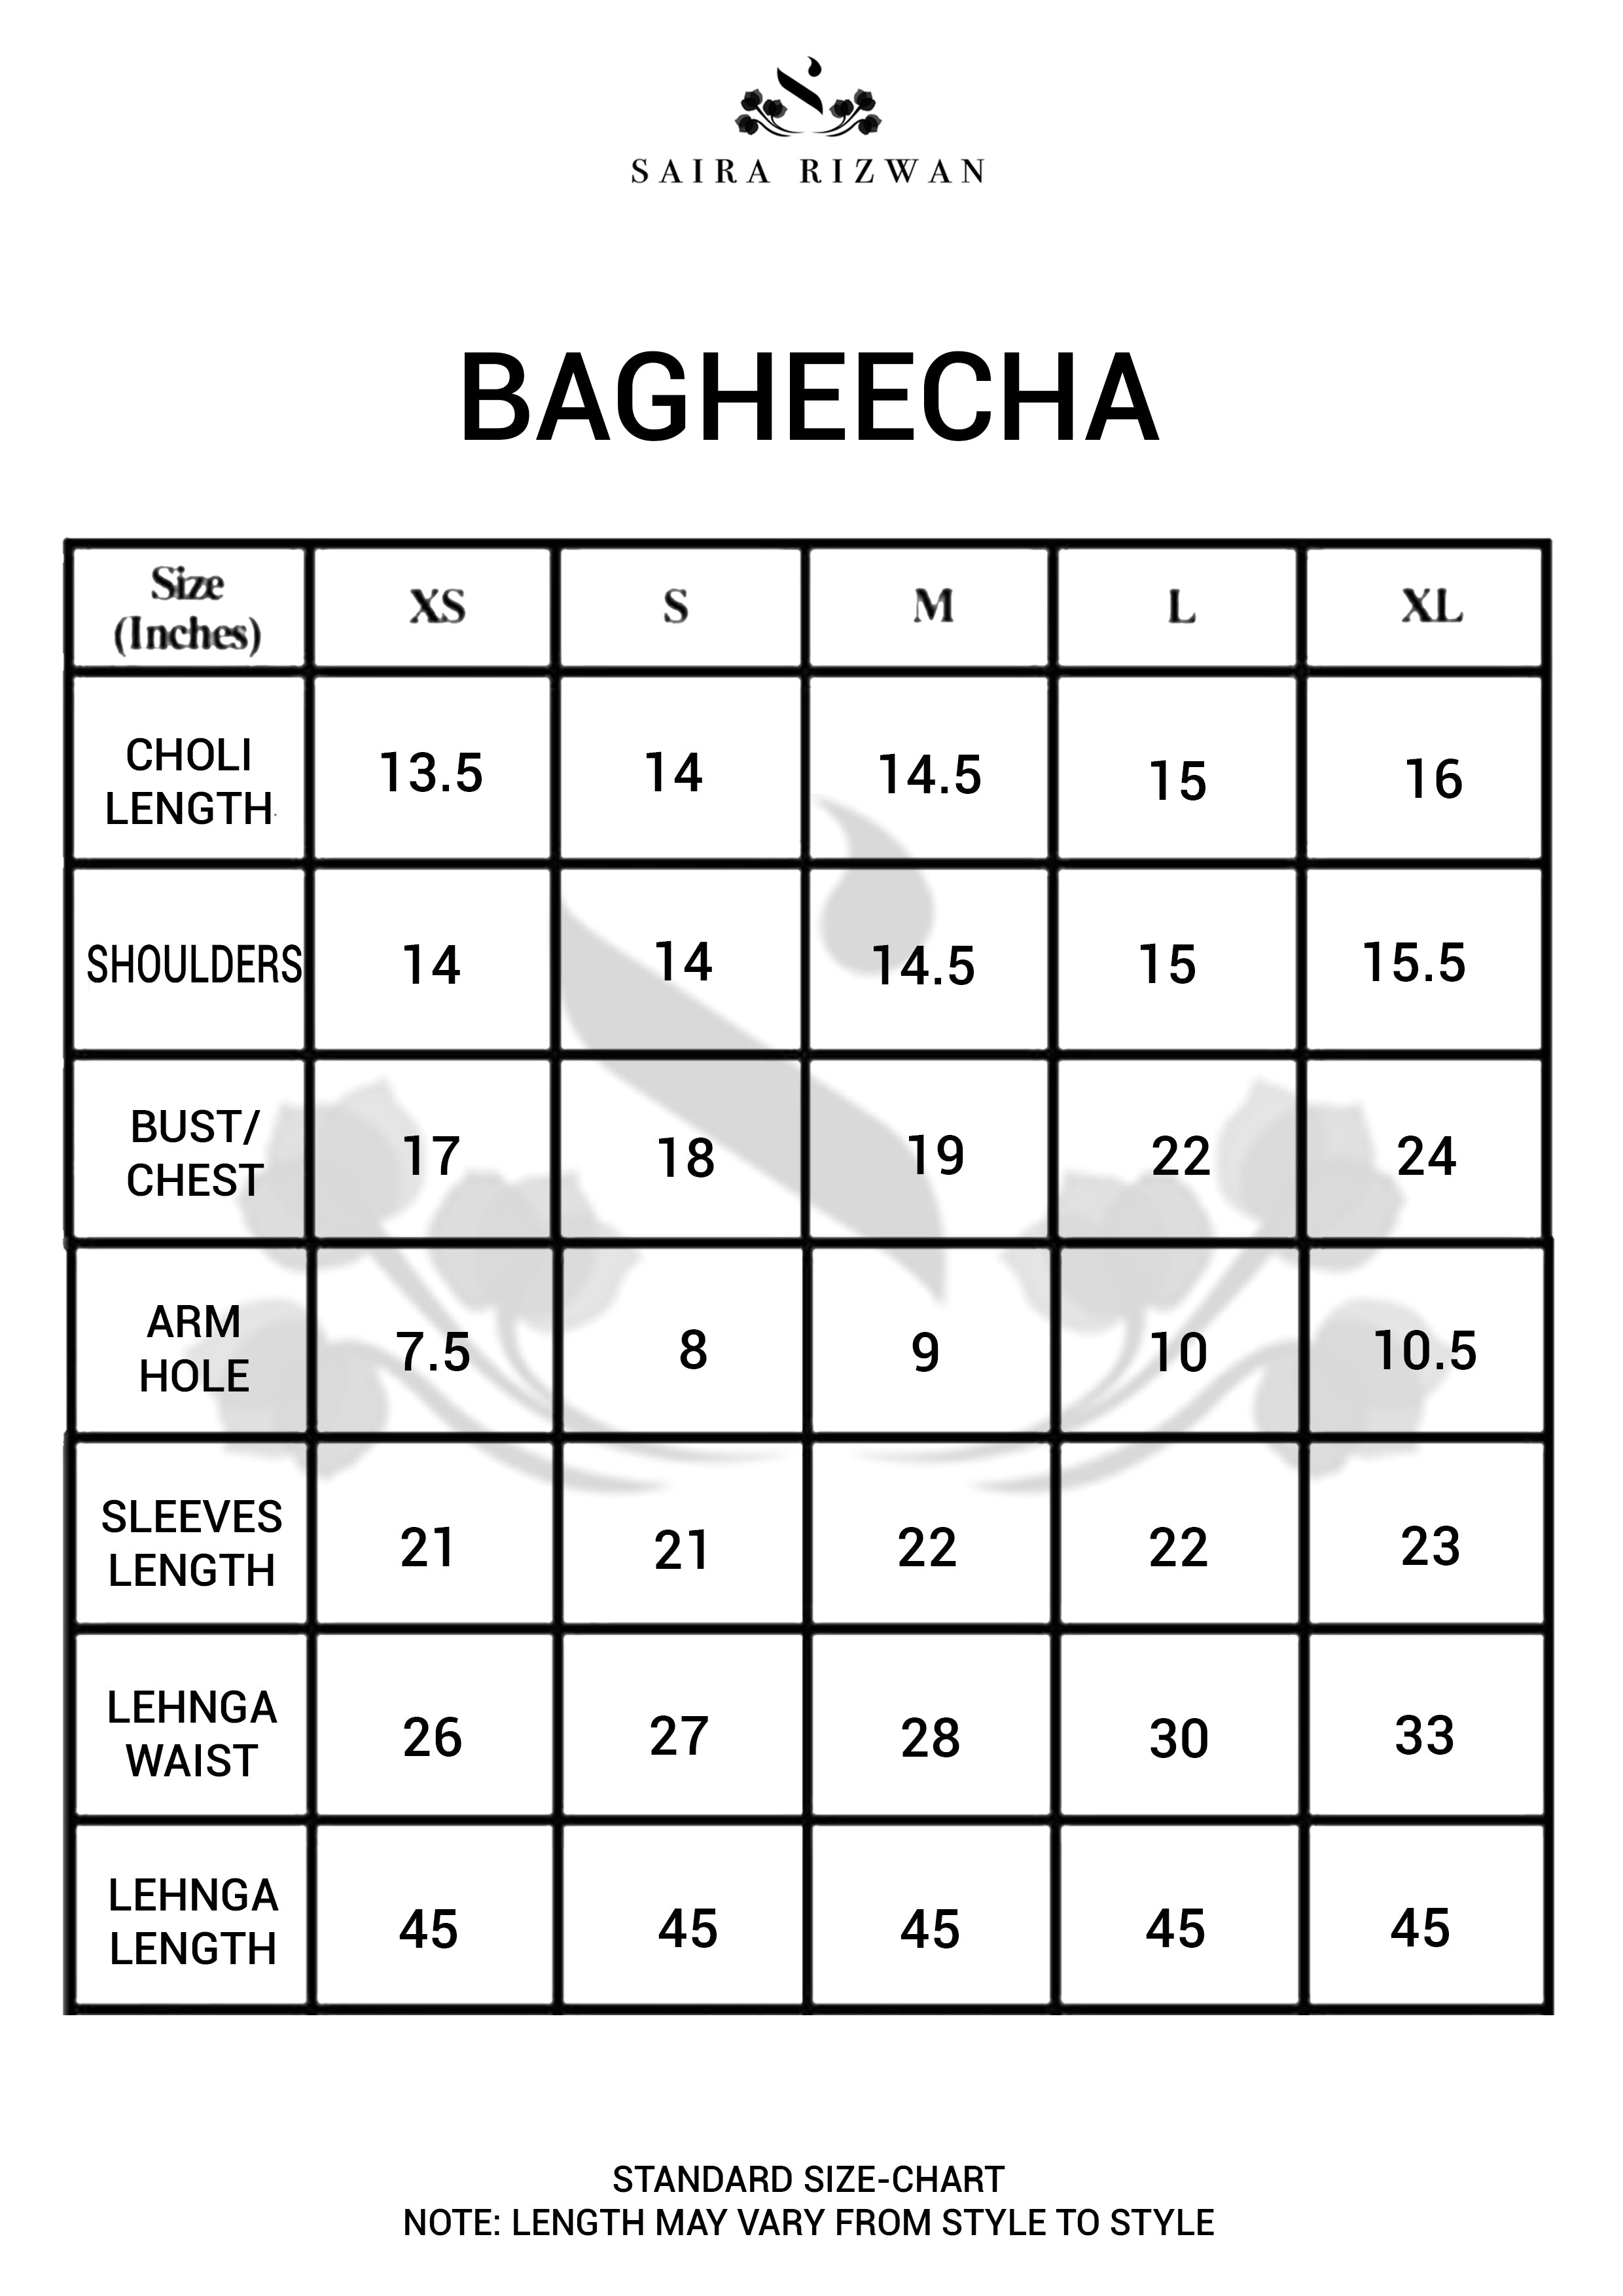 BAGHEECHA